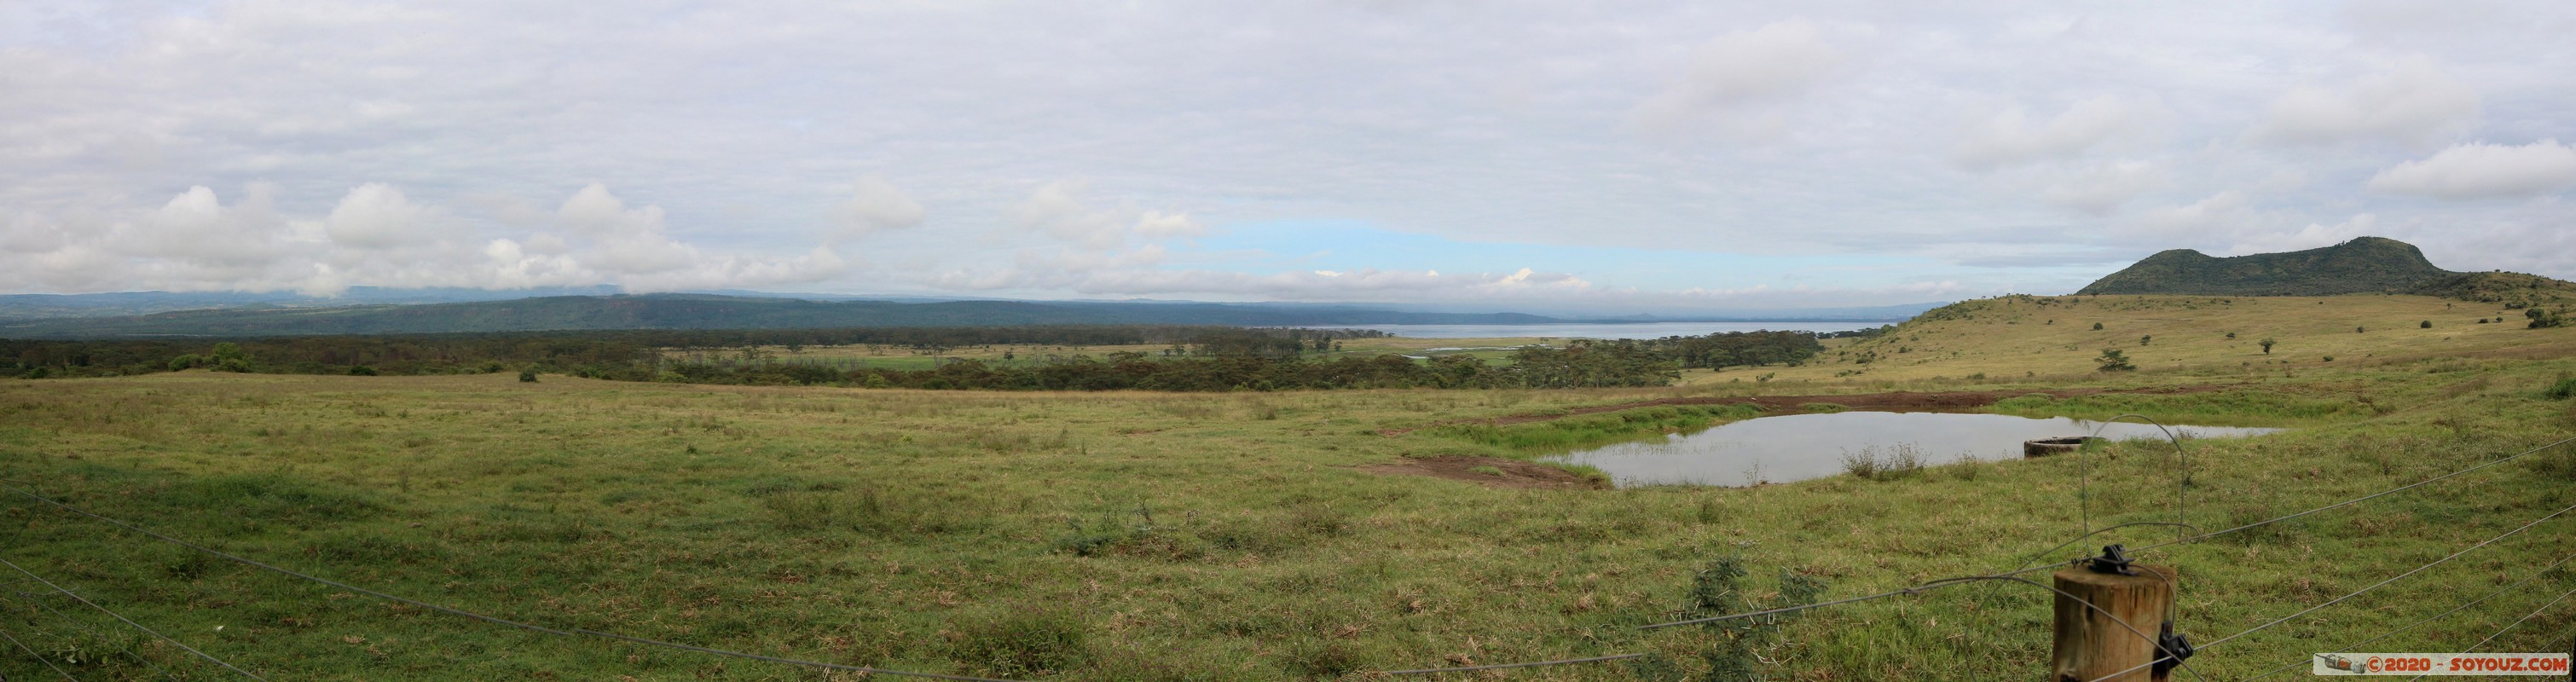 Lake Nakuru National Park - Panorama
Mots-clés: KEN Kenya Nakuru Nderit Lake Nakuru National Park Lac panorama